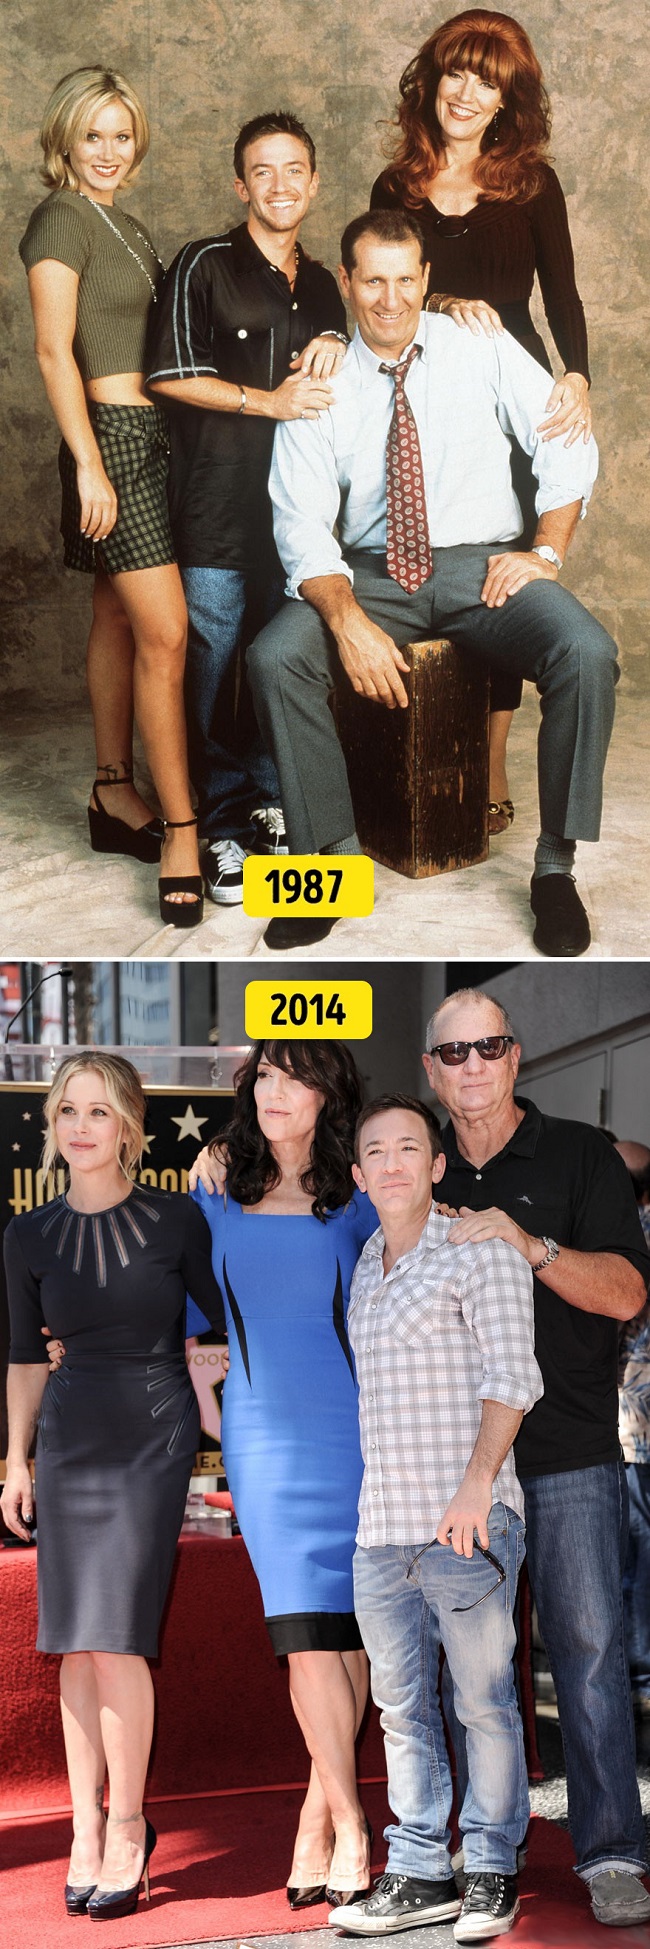 15. Katey Sagal, Ed O'Neill, Christina Applegate, David Faustino ("Egy rém rendes család", 1987 és 2014)